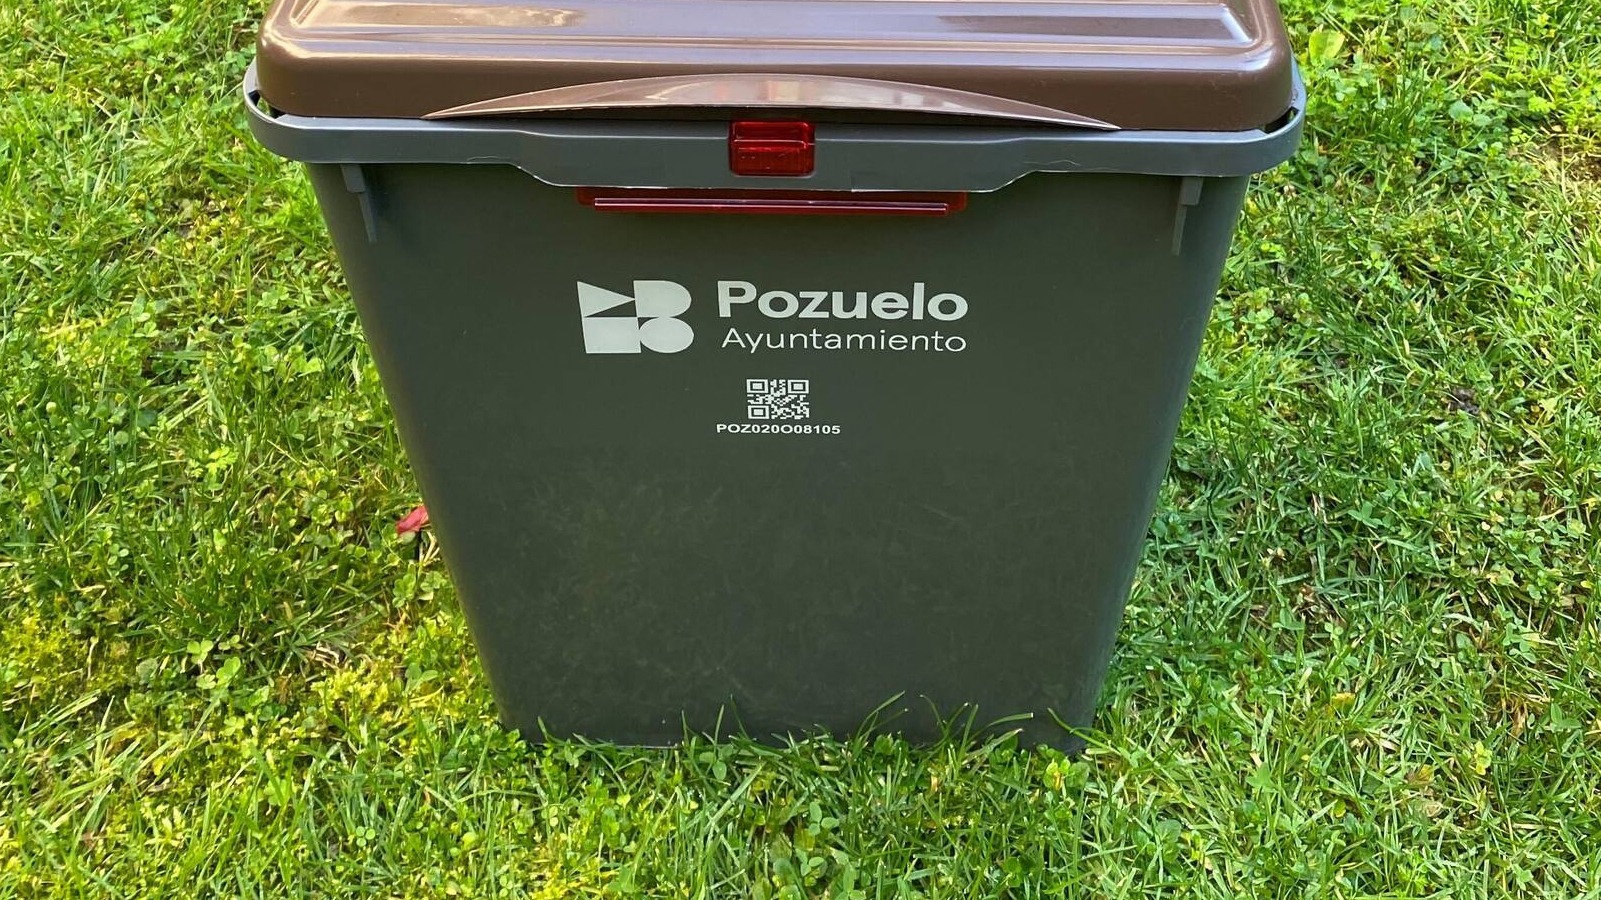 Pozuelo entregará un contenedor marrón a las viviendas unifamiliares para facilitar el reciclaje de los residuos orgánicos